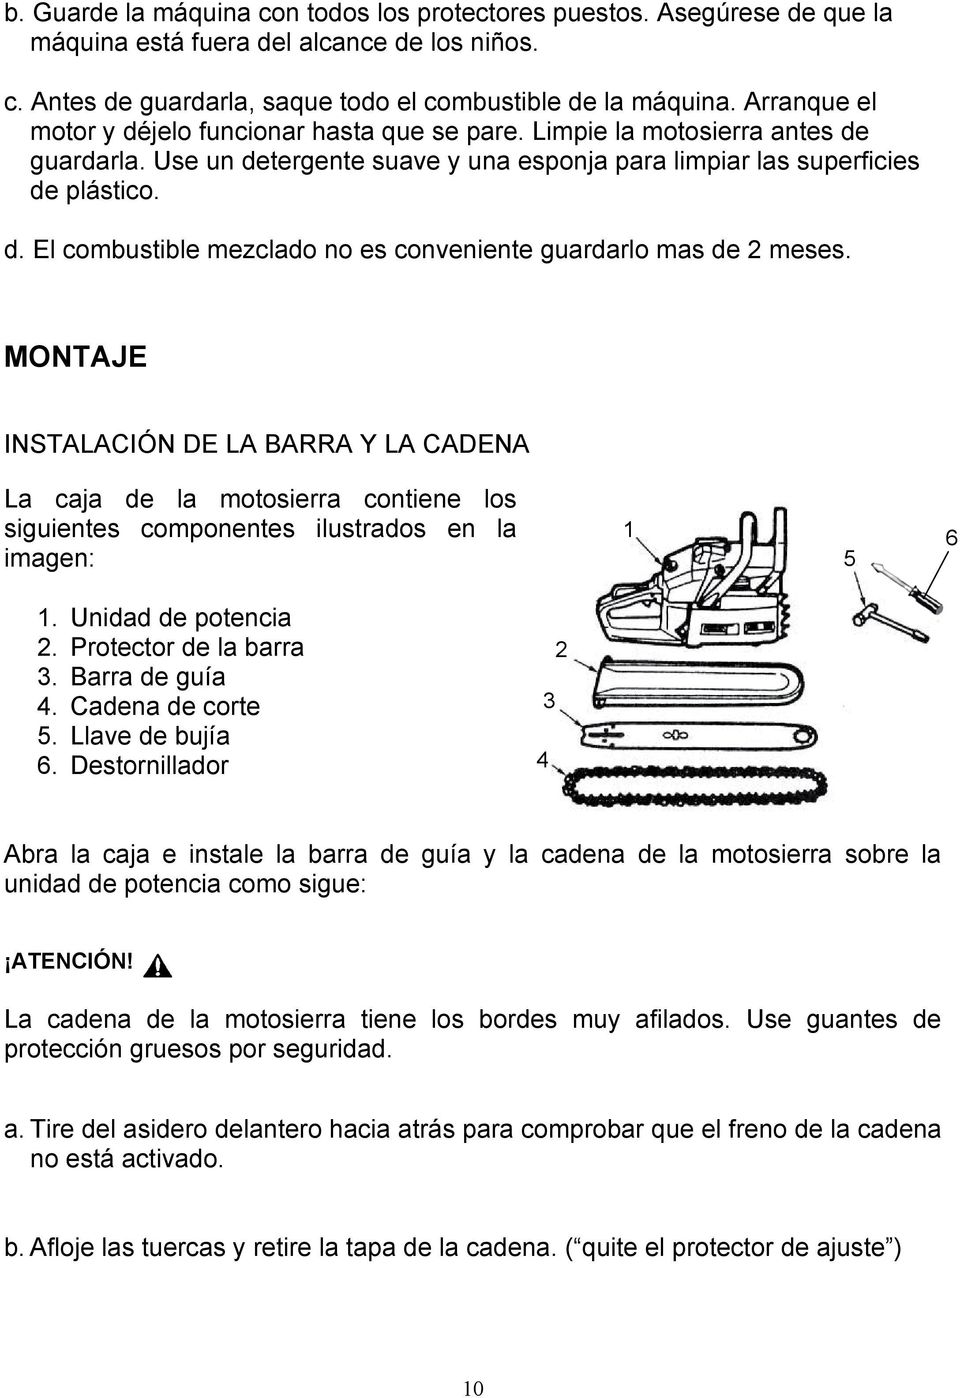 MONTAJE INSTALACIÓN DE LA BARRA Y LA CADENA La caja de la motosierra contiene los siguientes componentes ilustrados en la imagen: 1 5 6 1. Unidad de potencia 2. Protector de la barra 3.